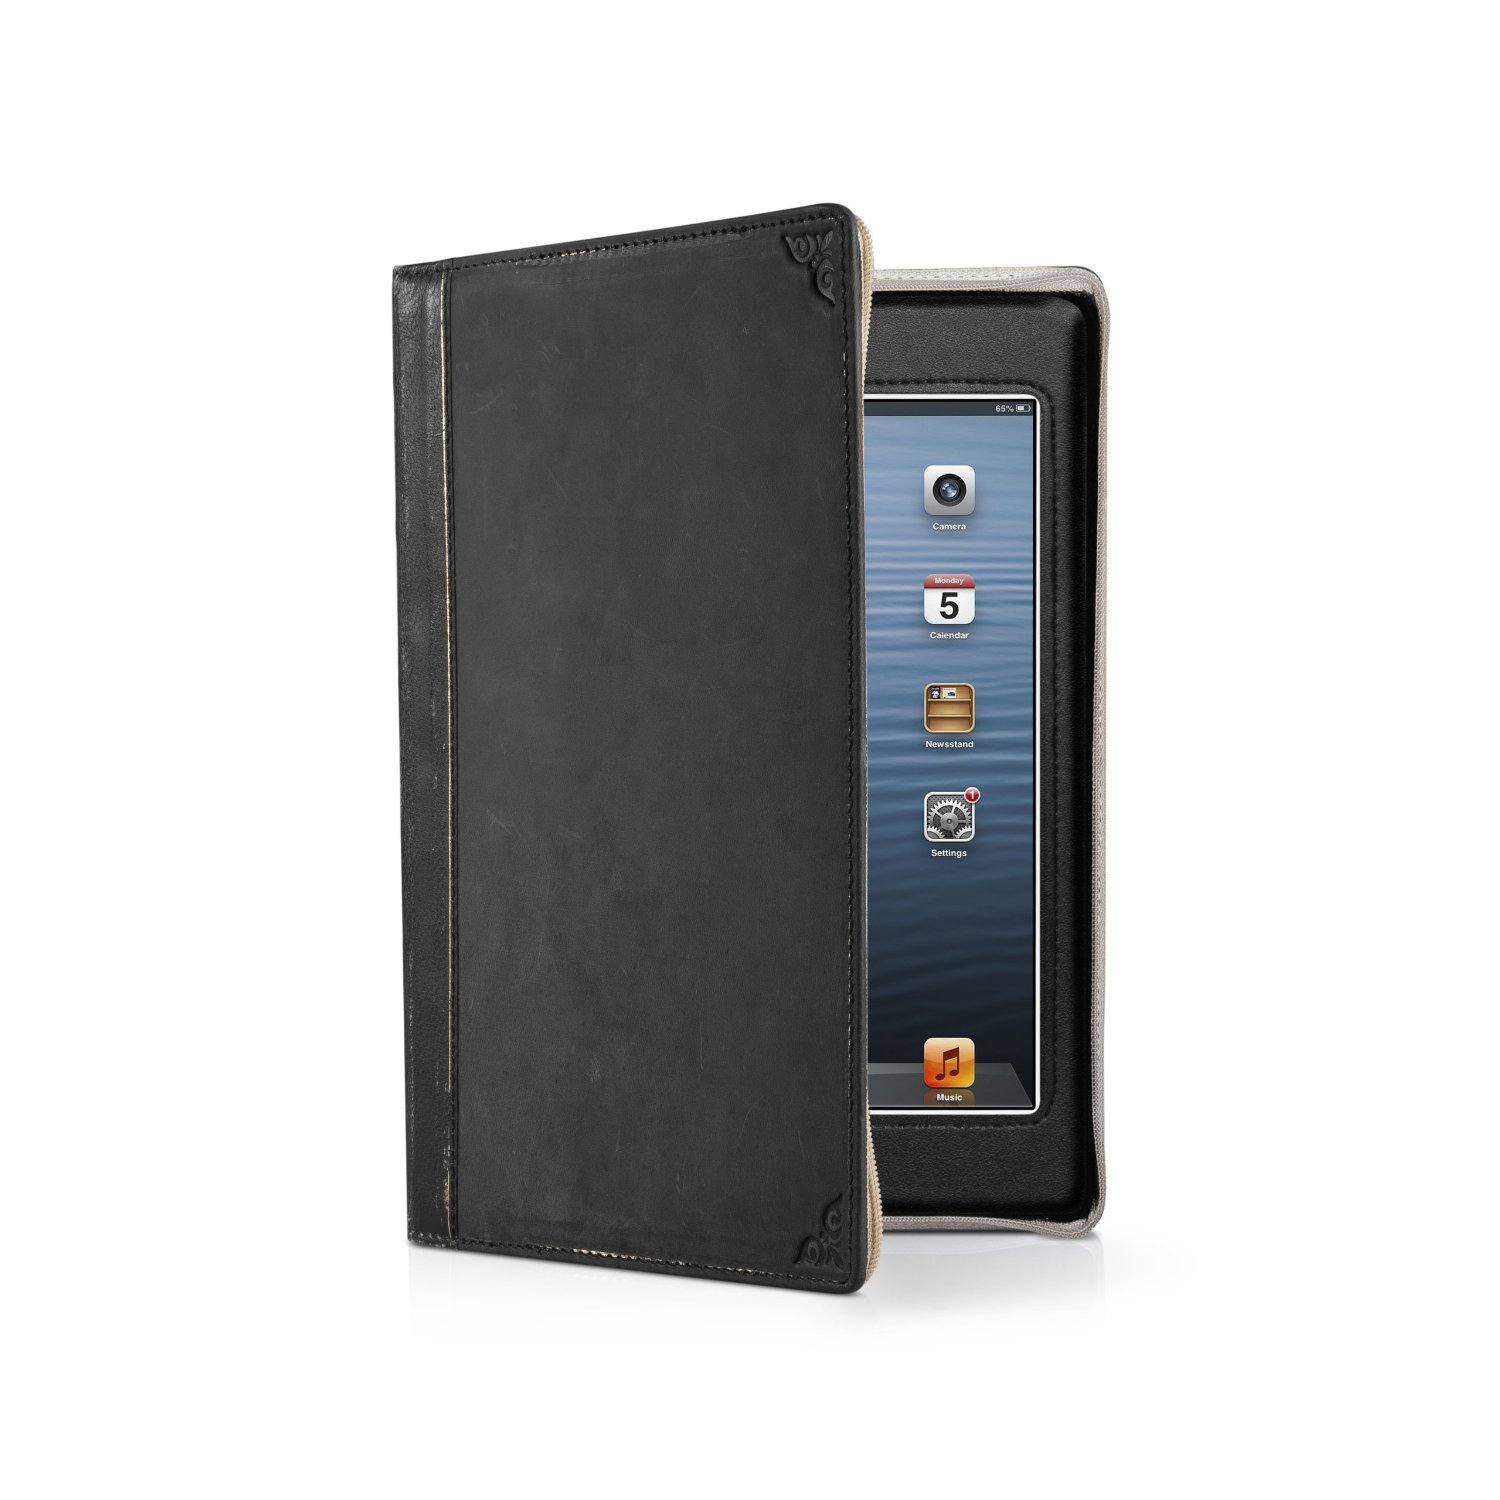 BookBook Hülle für das iPad Mini - elegantes Leder-Case mit guter Schutzfunktion